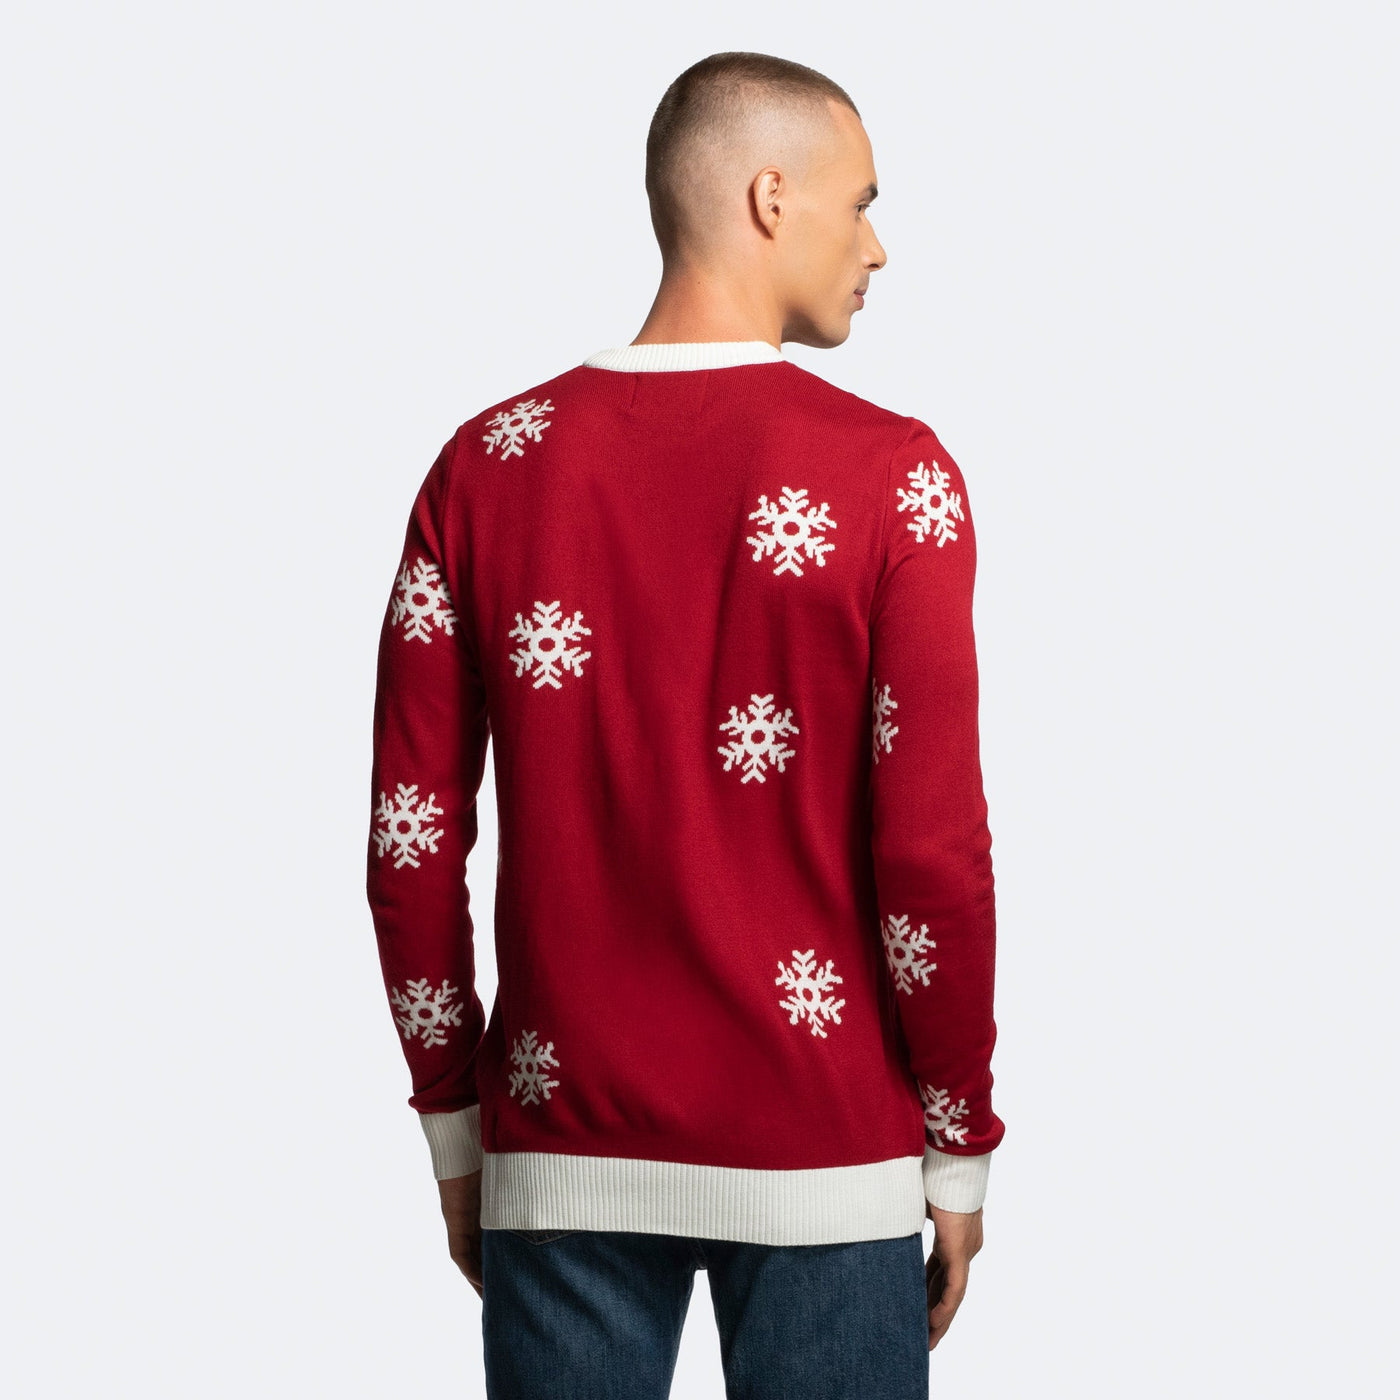 Men's Reindeer Christmas Sweater